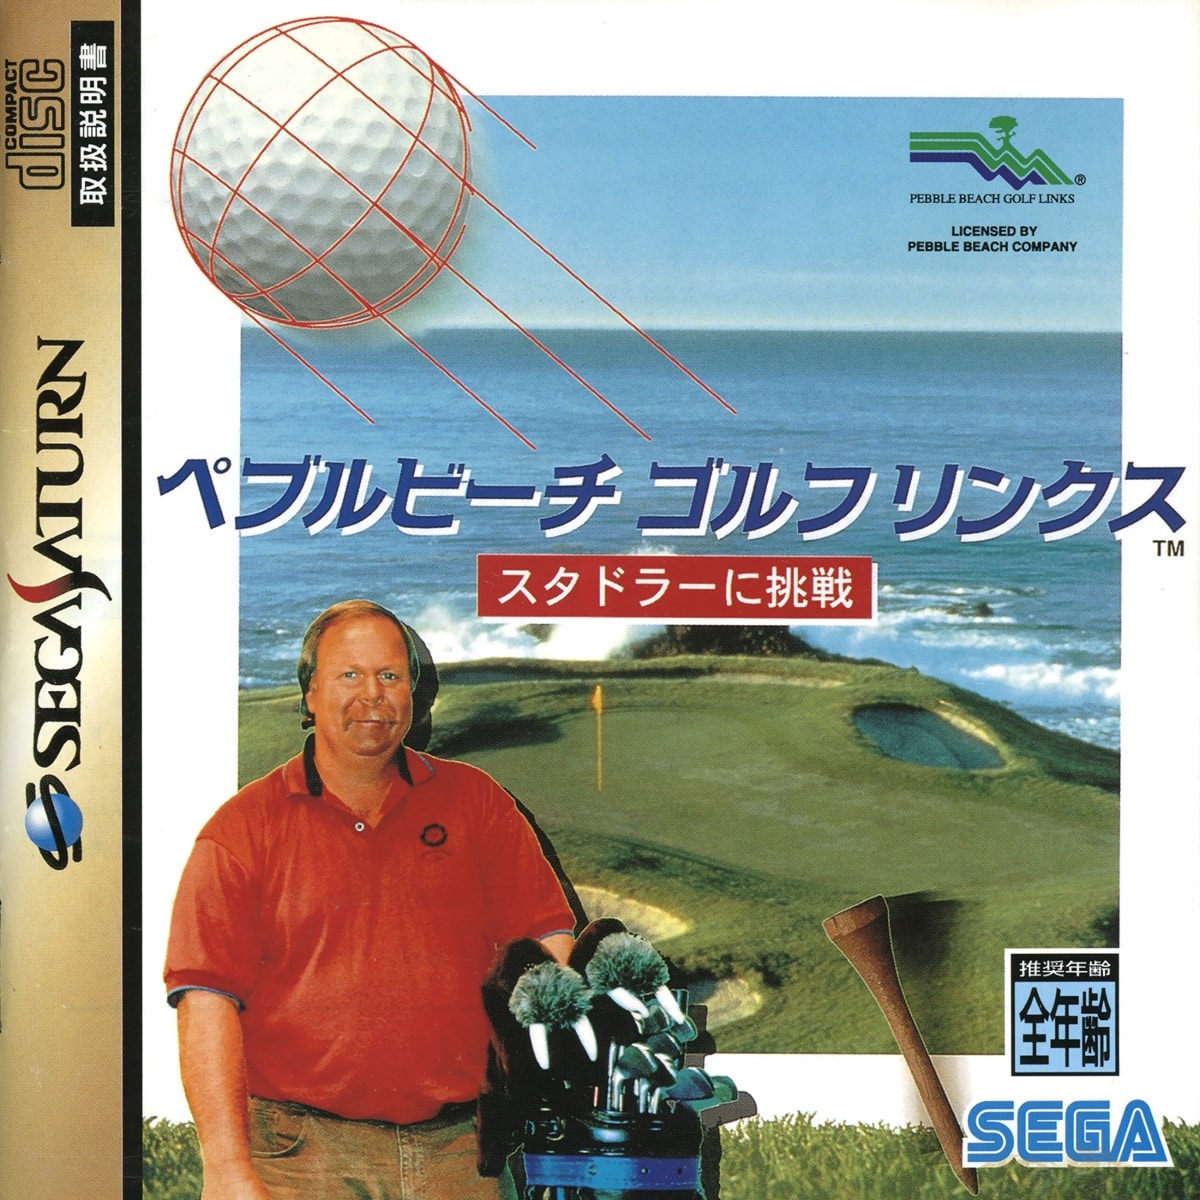 Capa do jogo Pebble Beach Golf Links